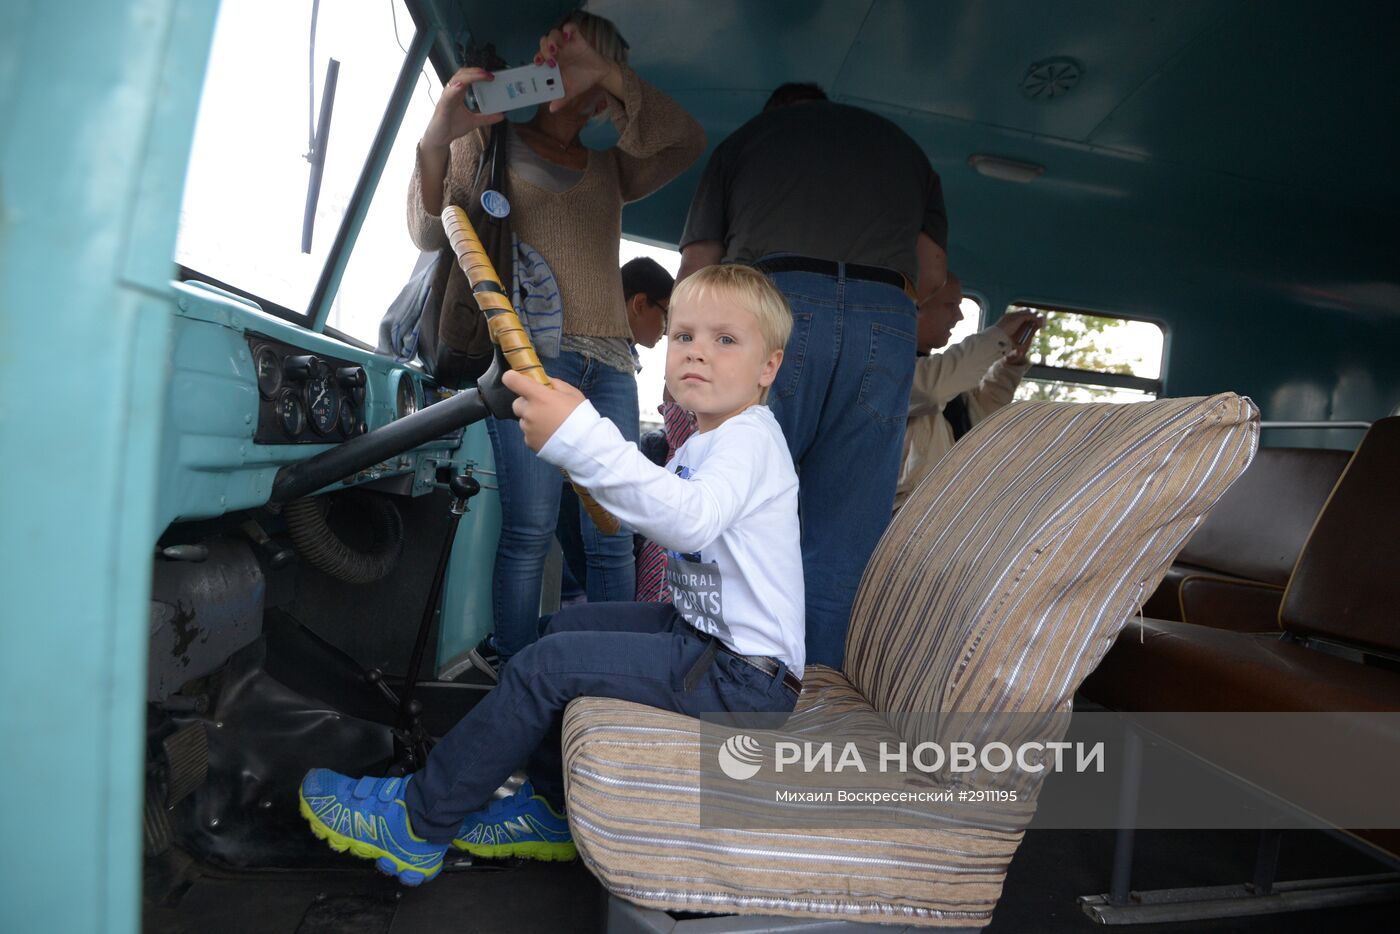 Праздник московского автобуса